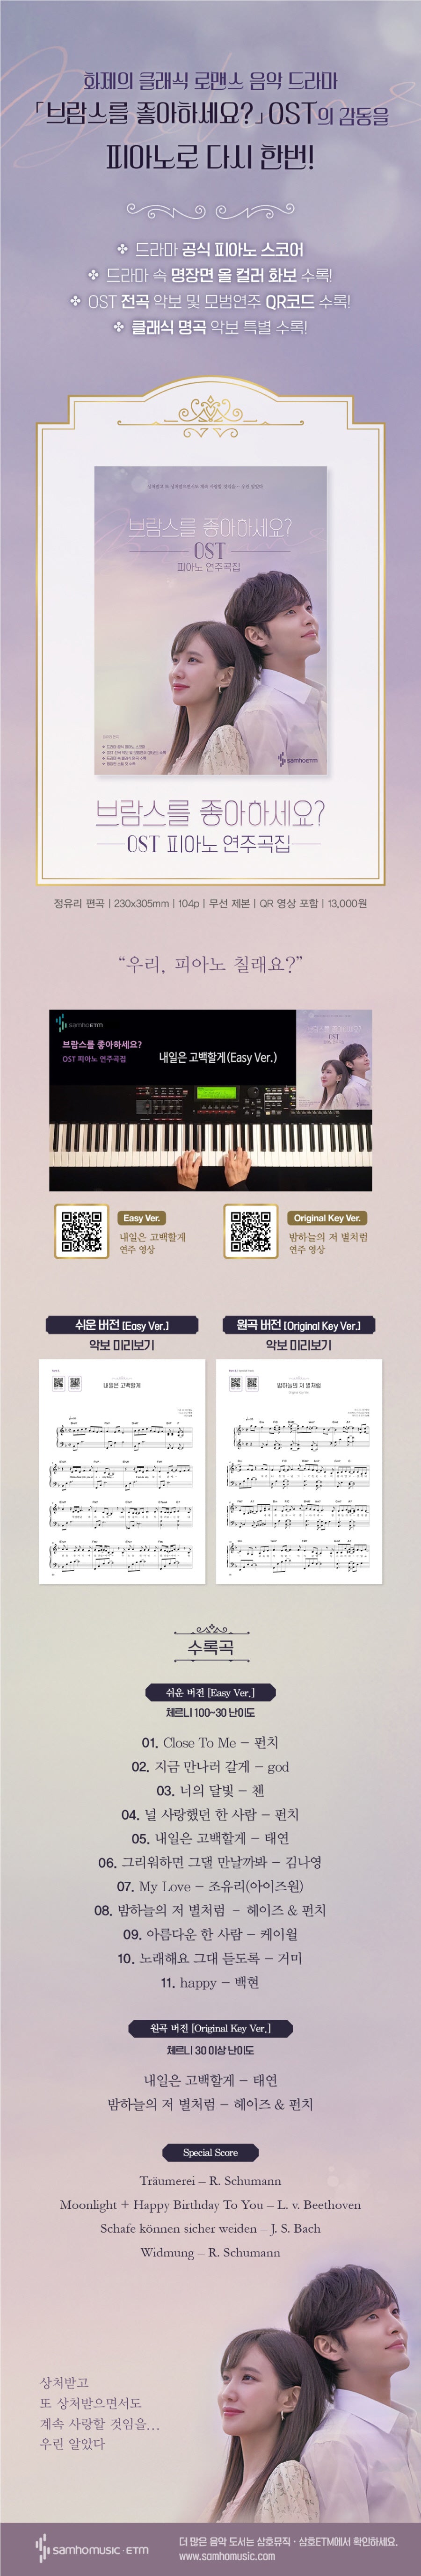 Gefällt Ihnen das Brahms OST Piano Scorebook?